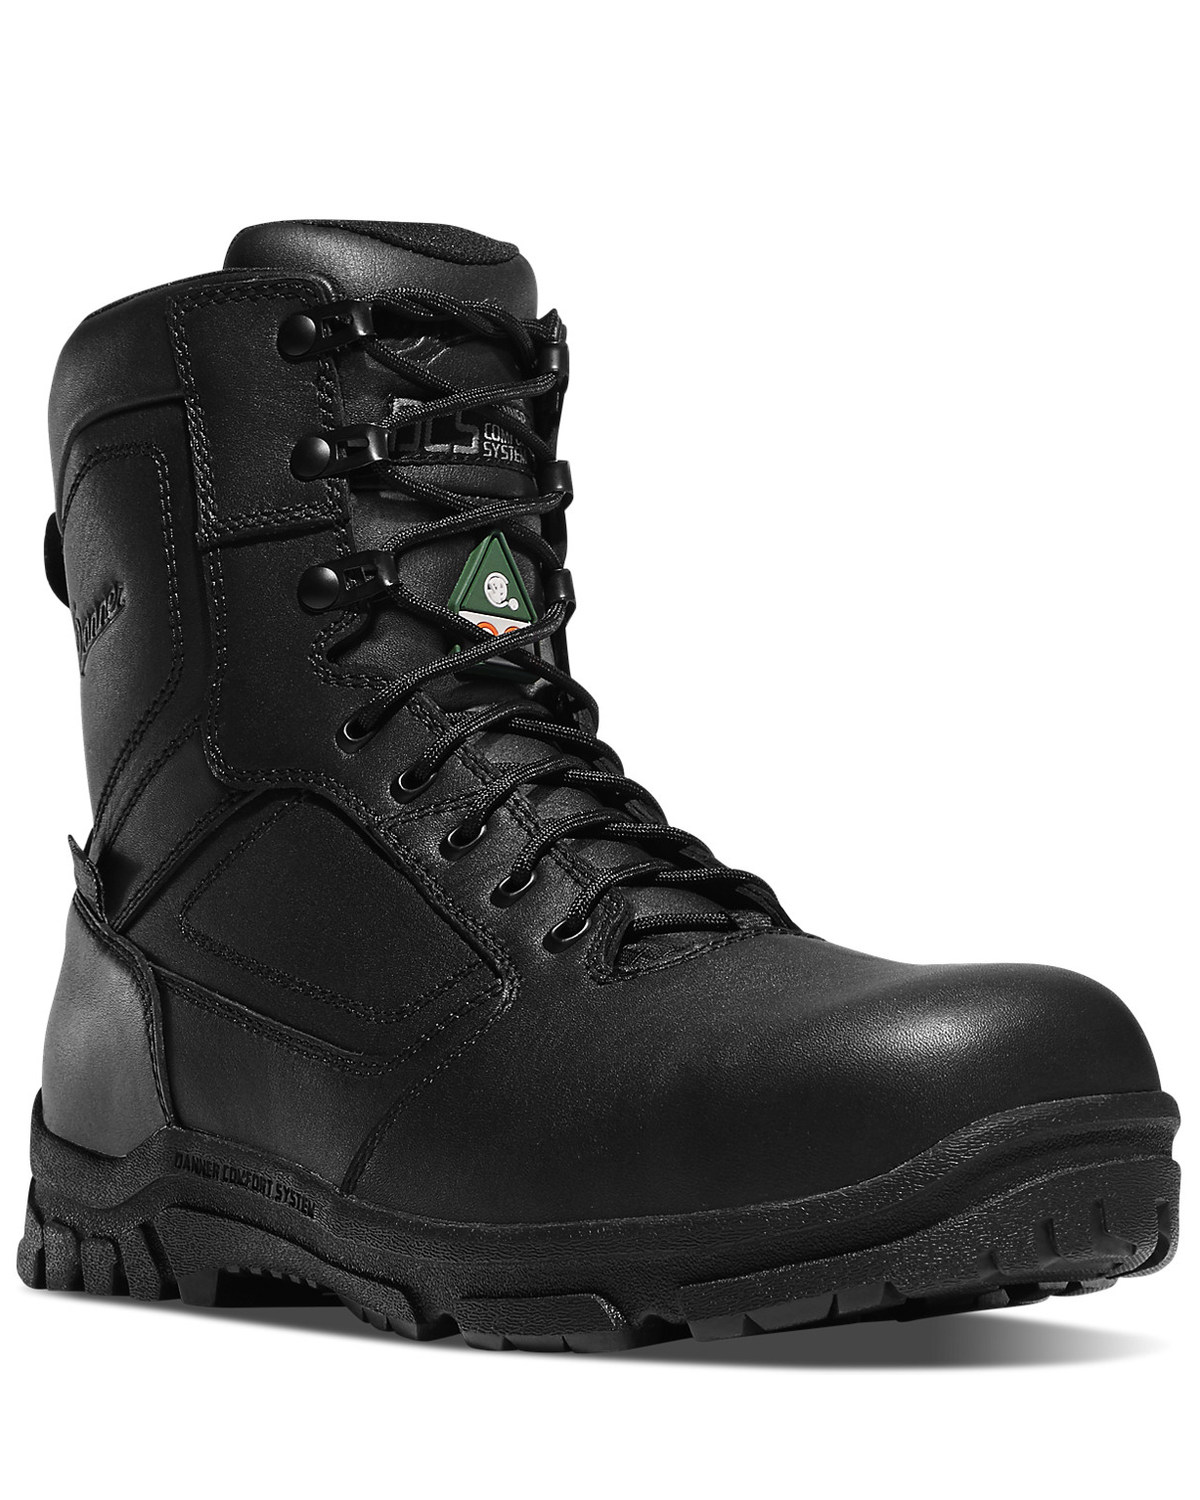 Danner Men's Lookout EMS Work Boots - Composite Toe